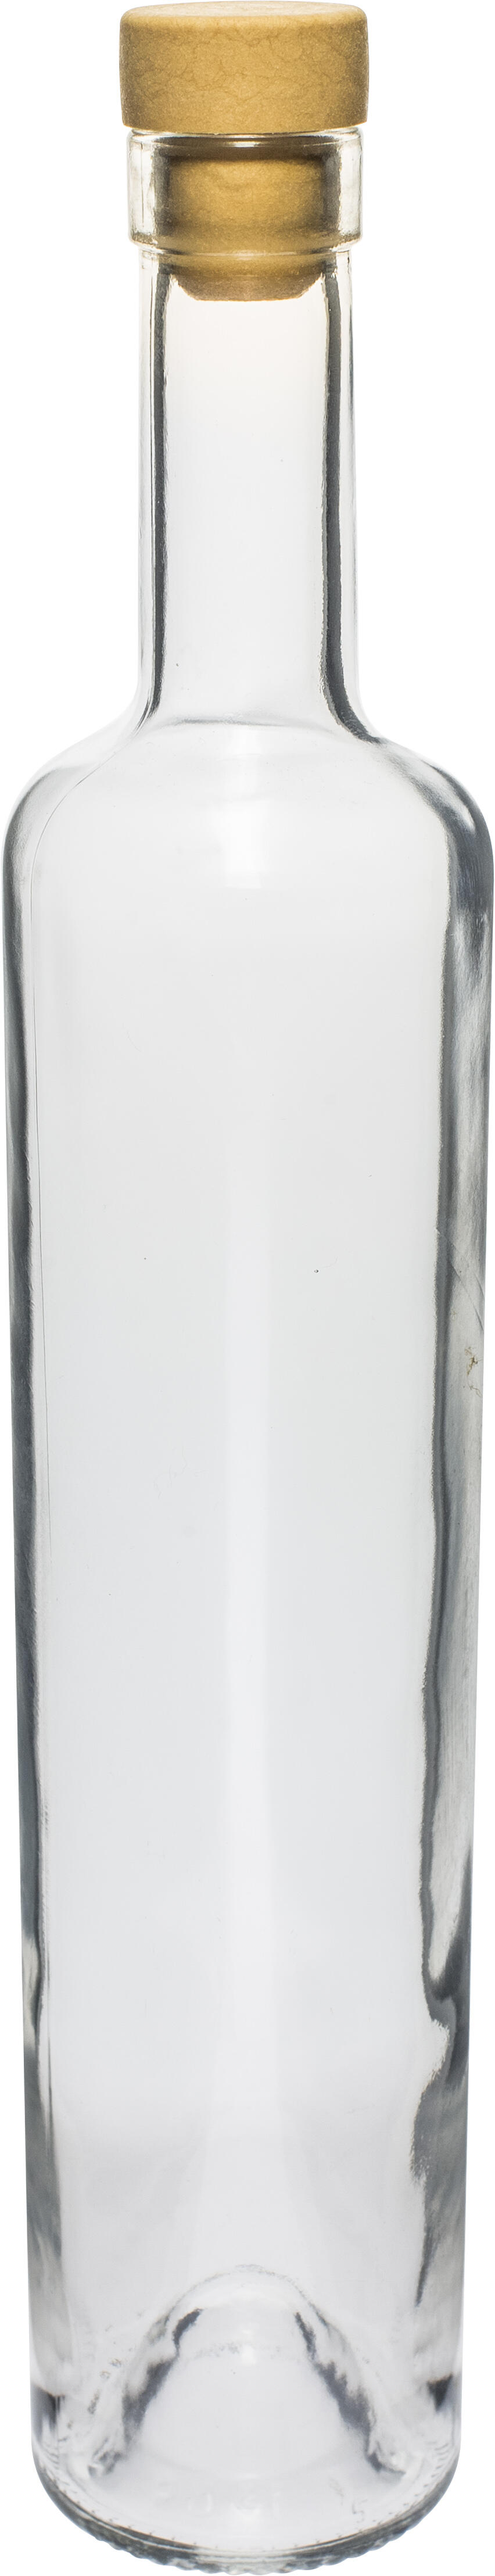 láhev 500ml MARINA skleněná se zátkou 0.44 Kg MAXMIX Sklad14 330506 283